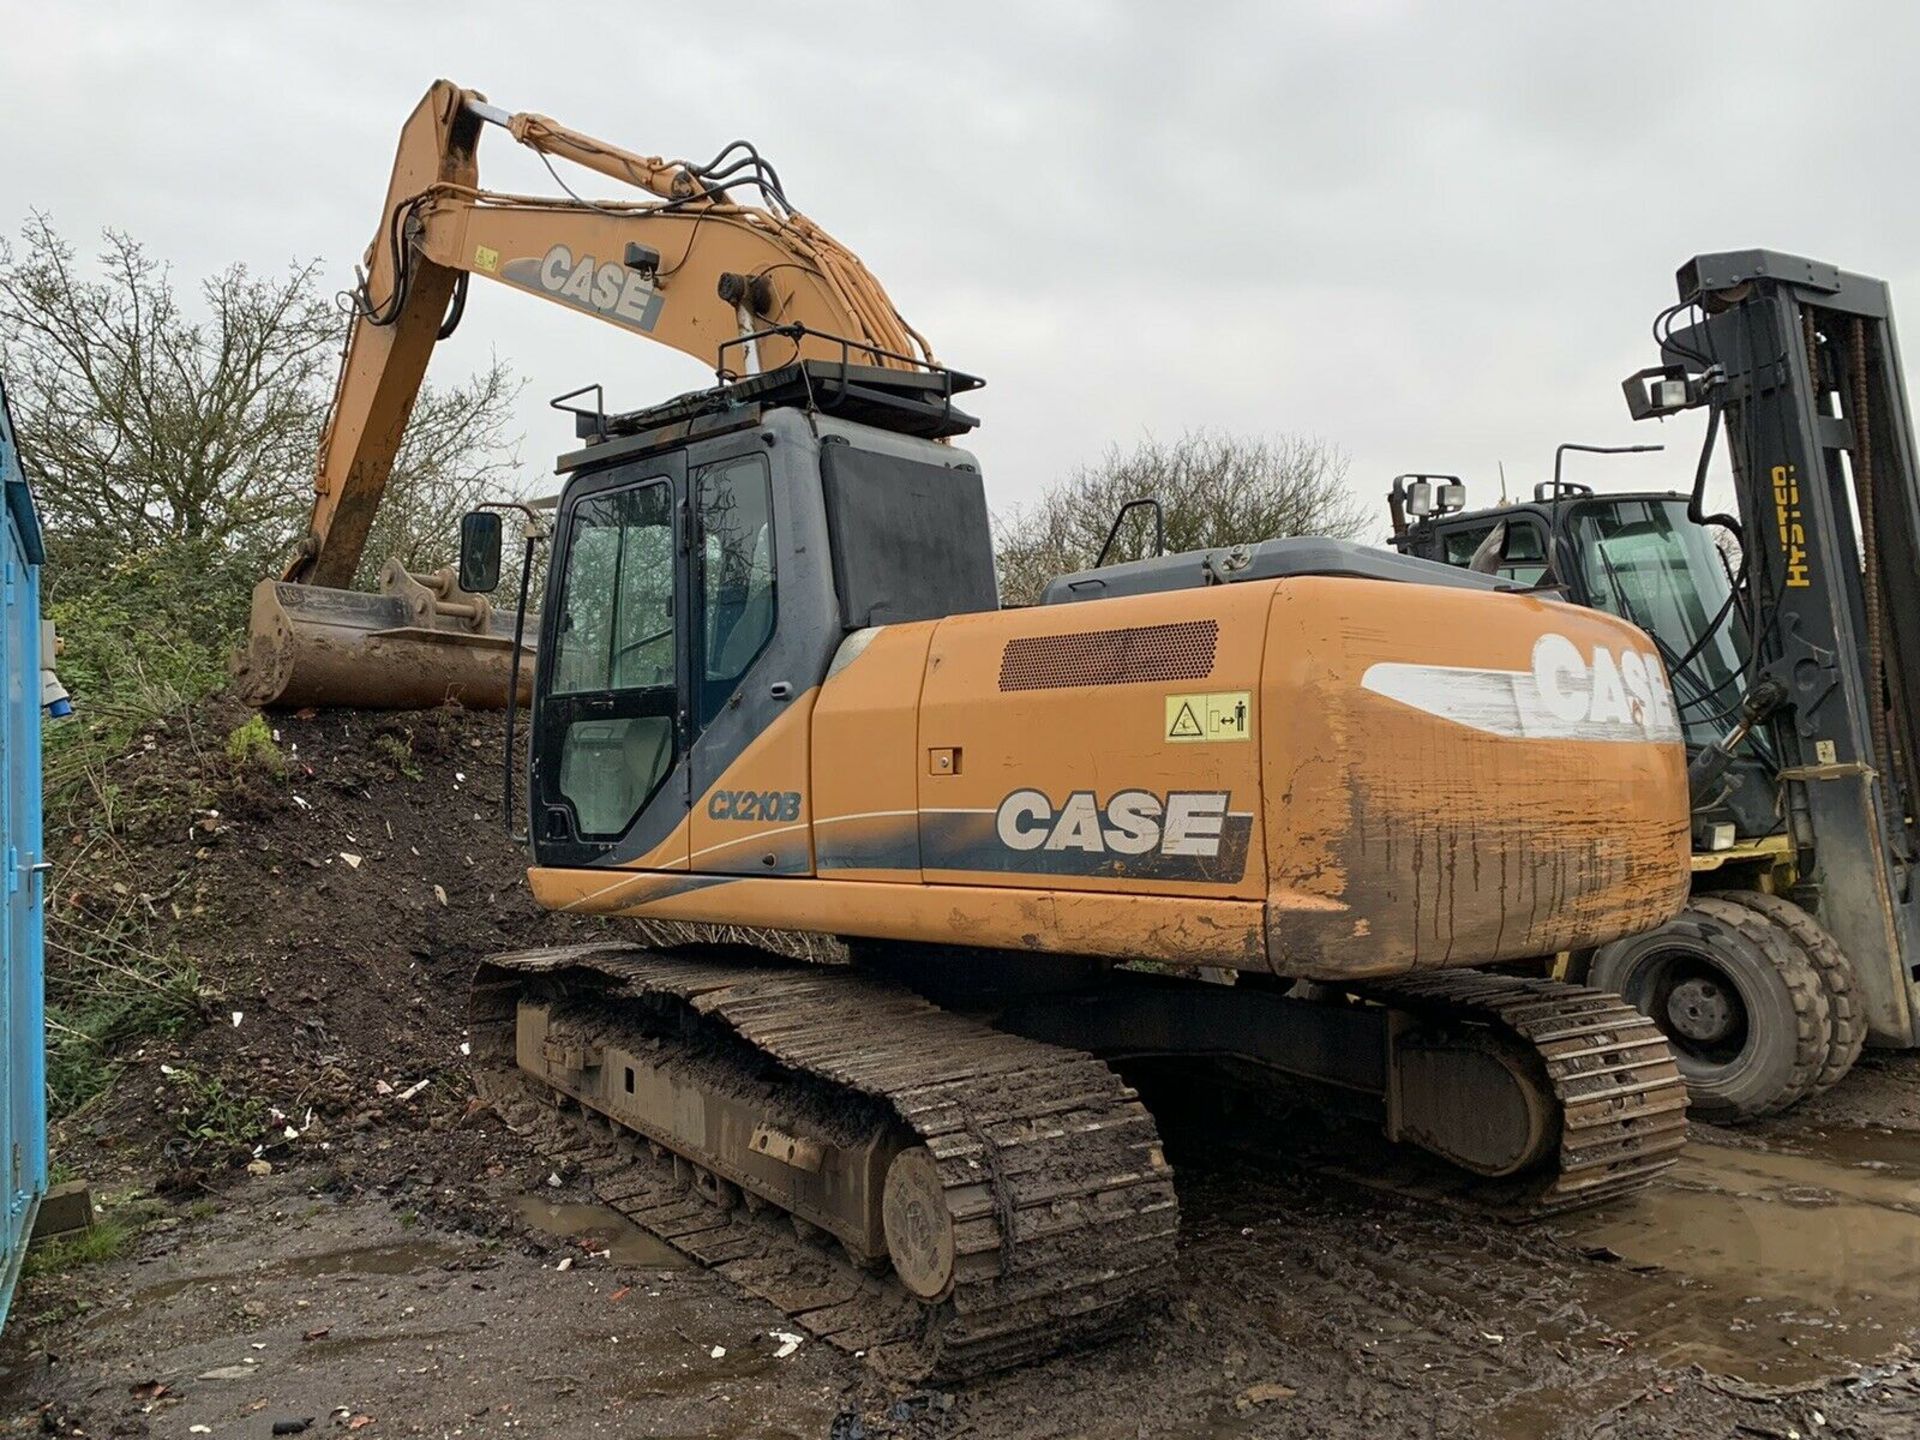 CASE CX 210 Excavator 21 Ton Digger